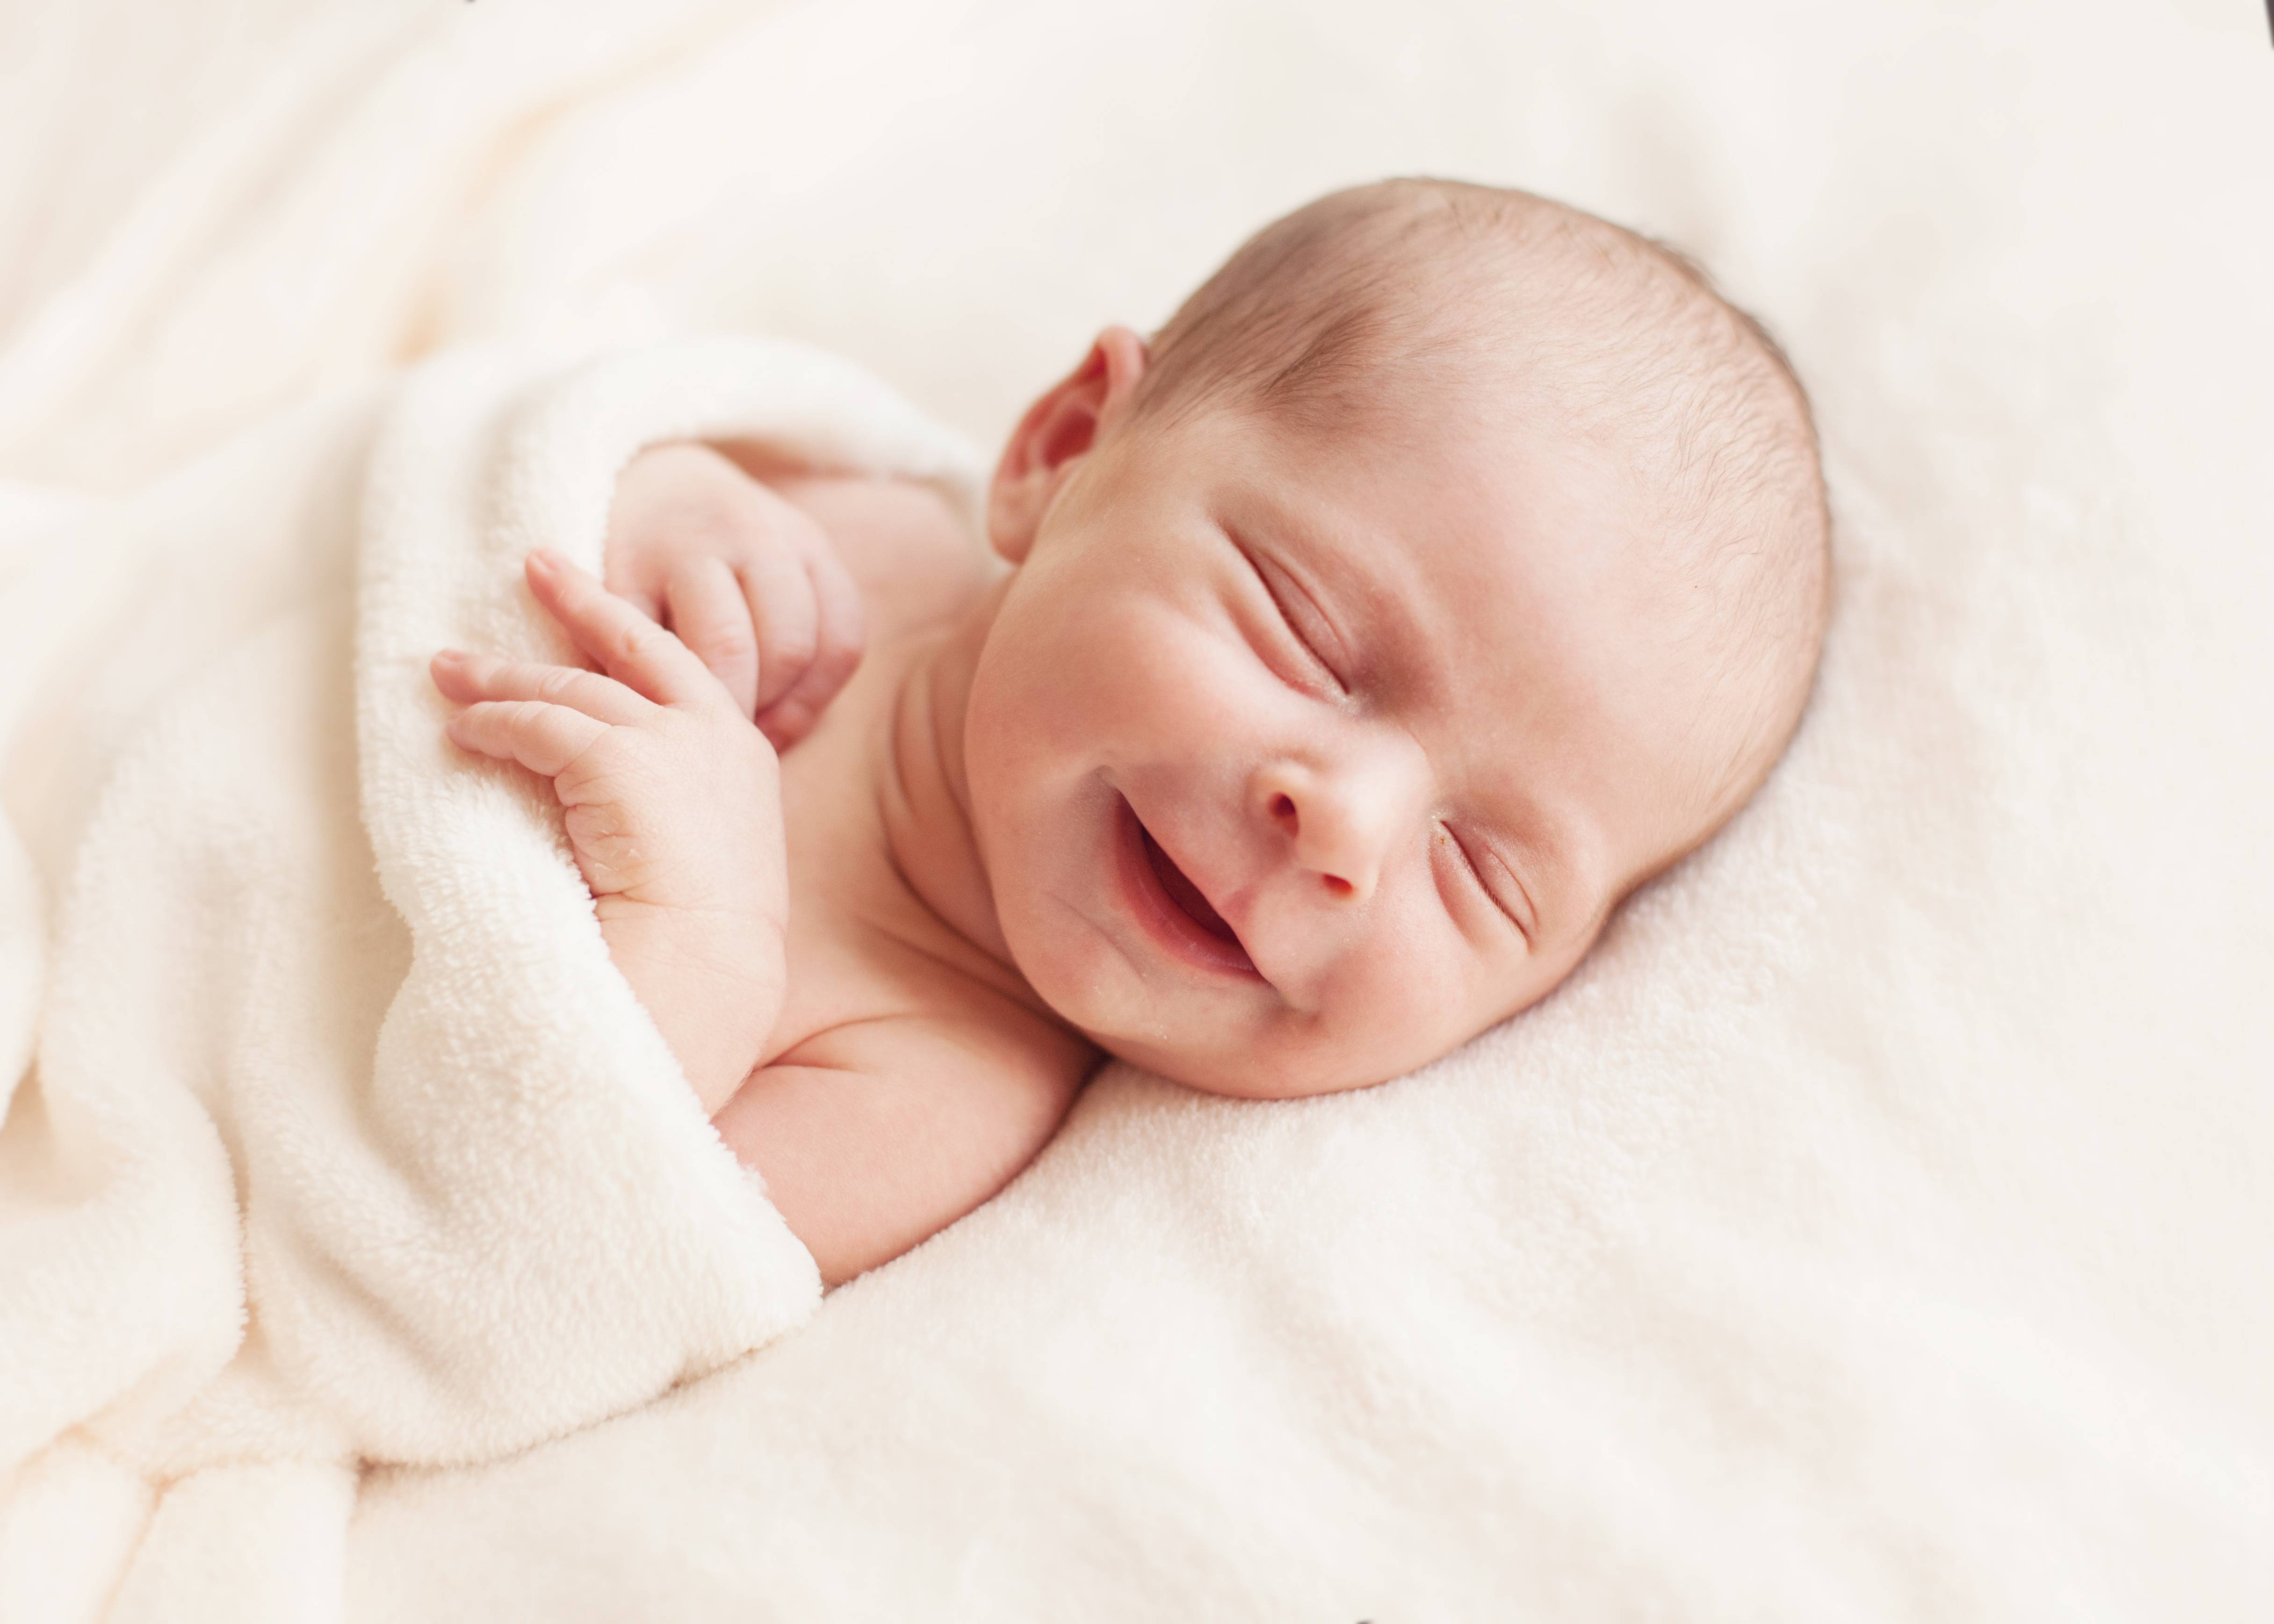 10 удивительных фактов о новорожденных, о которых мало кто знает